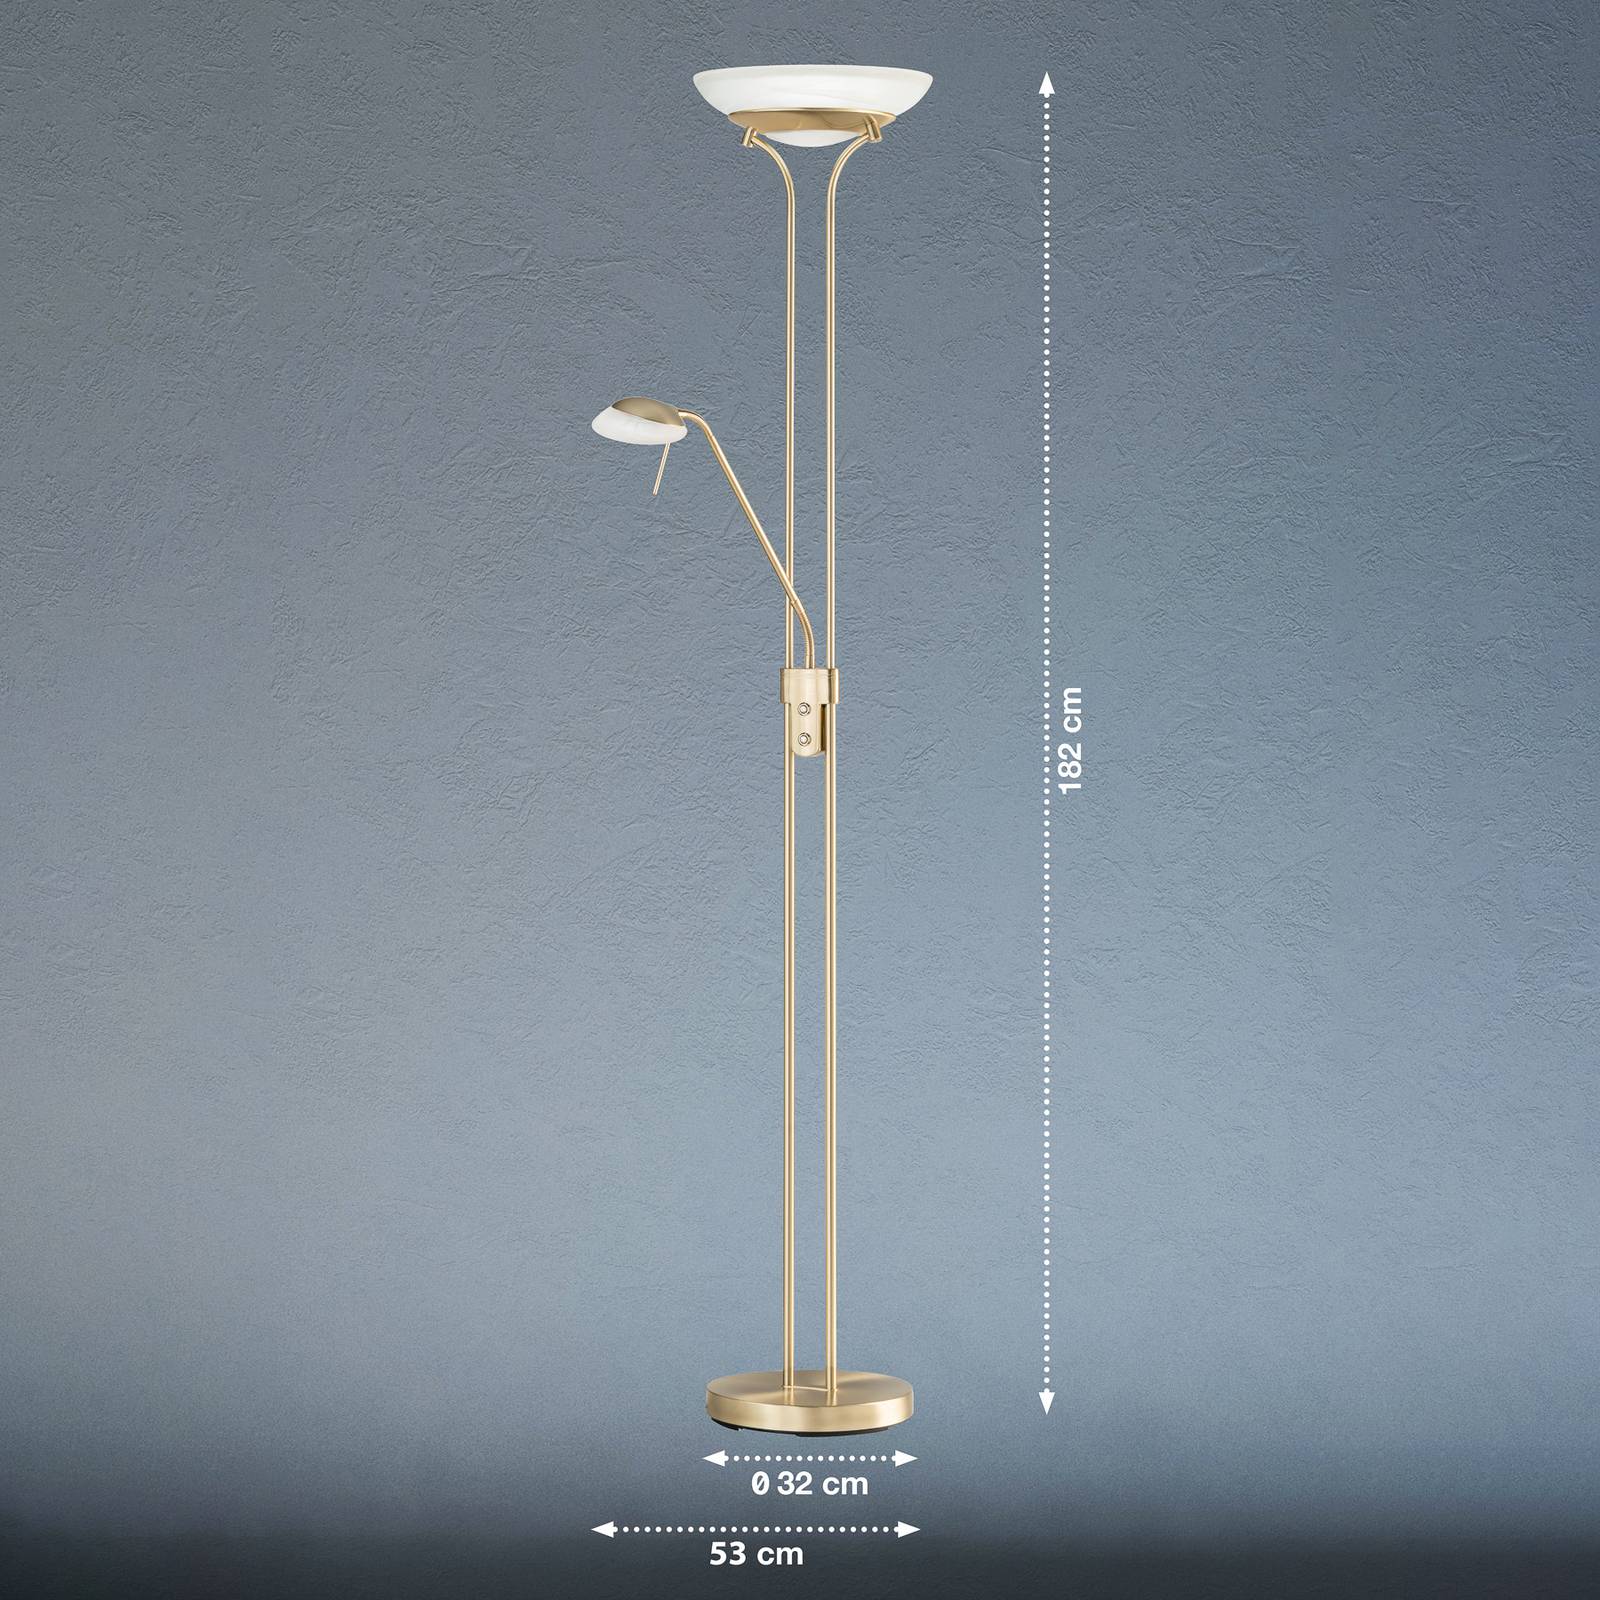 E-shop LED stojacia lampa Pool, mosadzná farba, výška 182 cm, 2 svetlá.